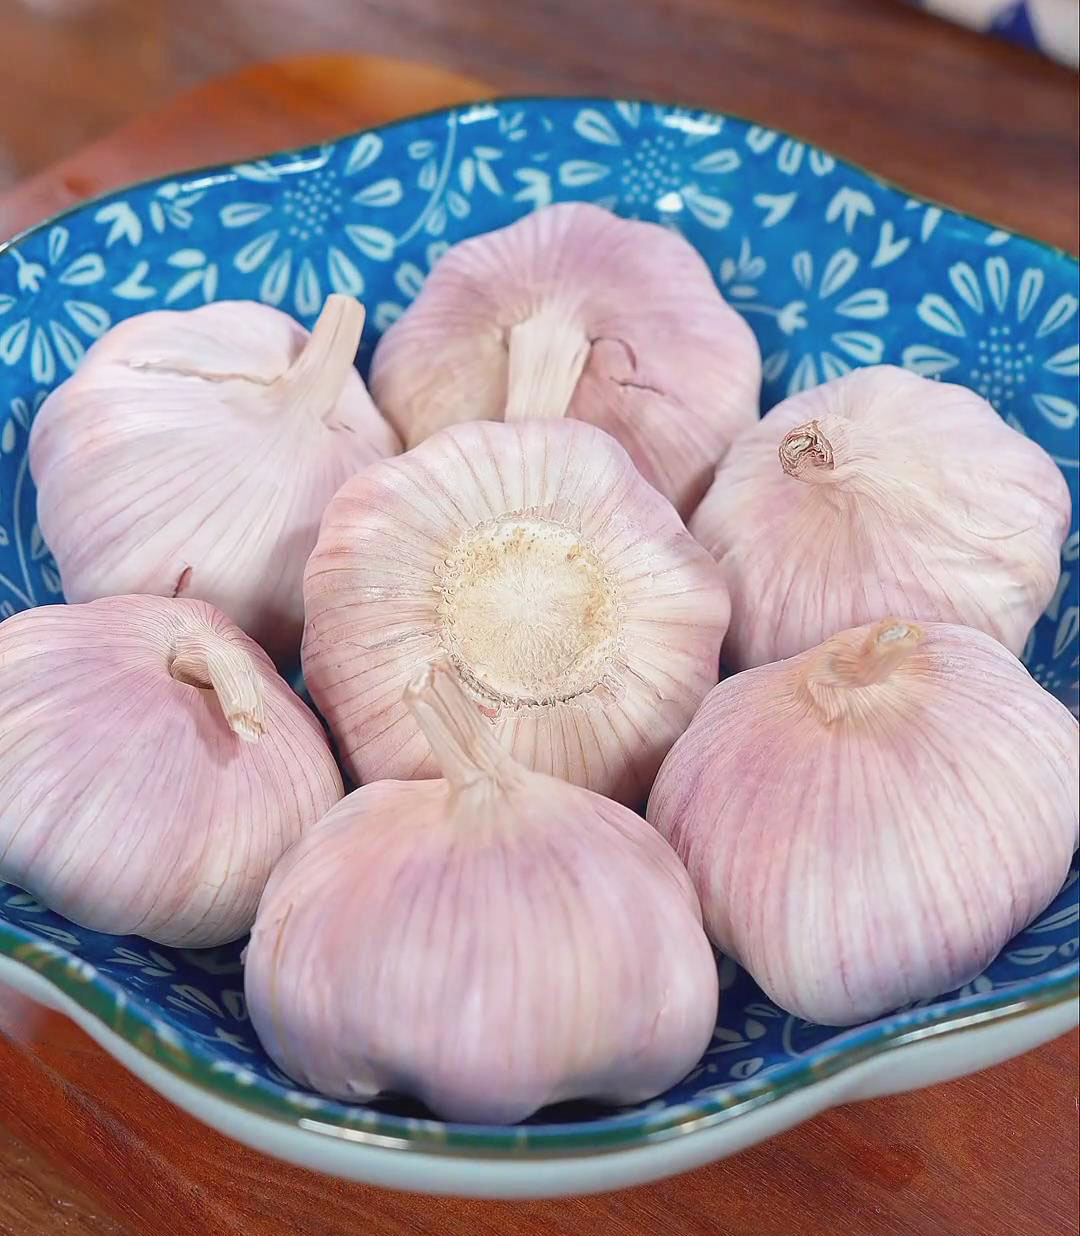 Prepare the Garlic